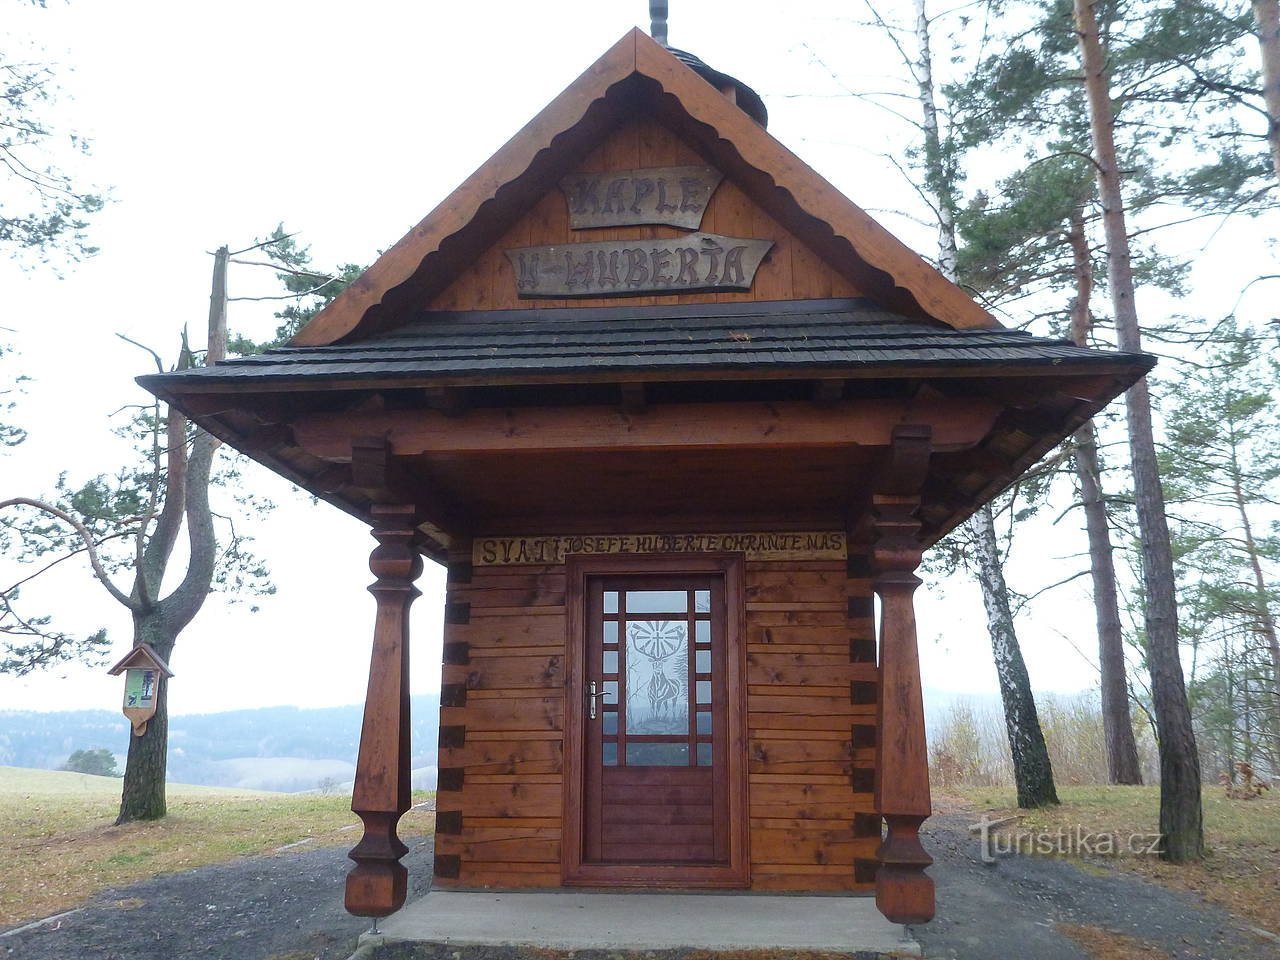 Nhà nguyện bằng gỗ của Thánh Hubert trên Valašská Senicá.